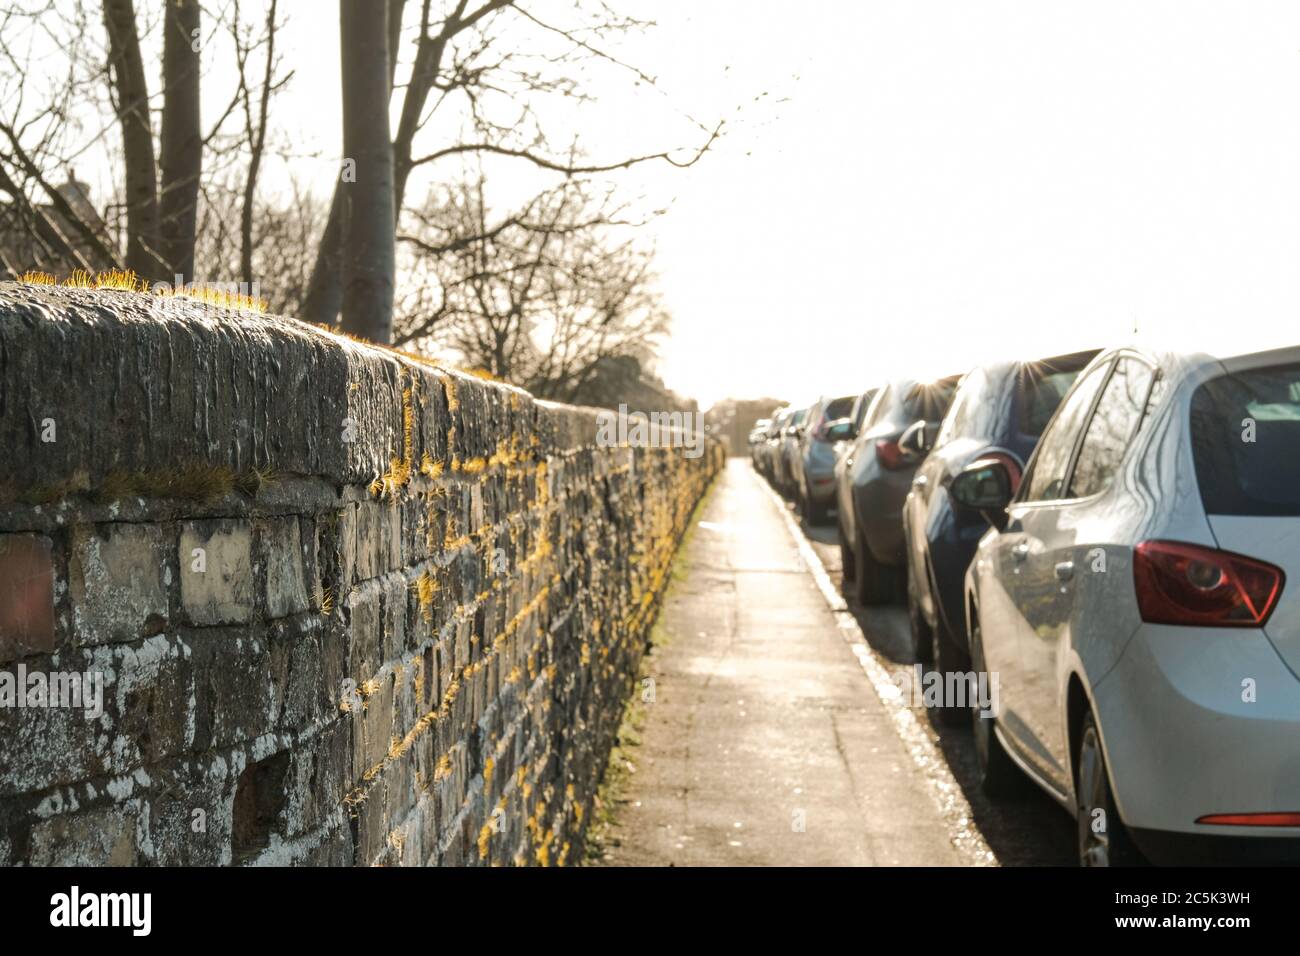 Alto contrasto, vista su un basso livello di un tipico marciapiede visto in una strada a senso unico con auto parcheggiate. Foto Stock